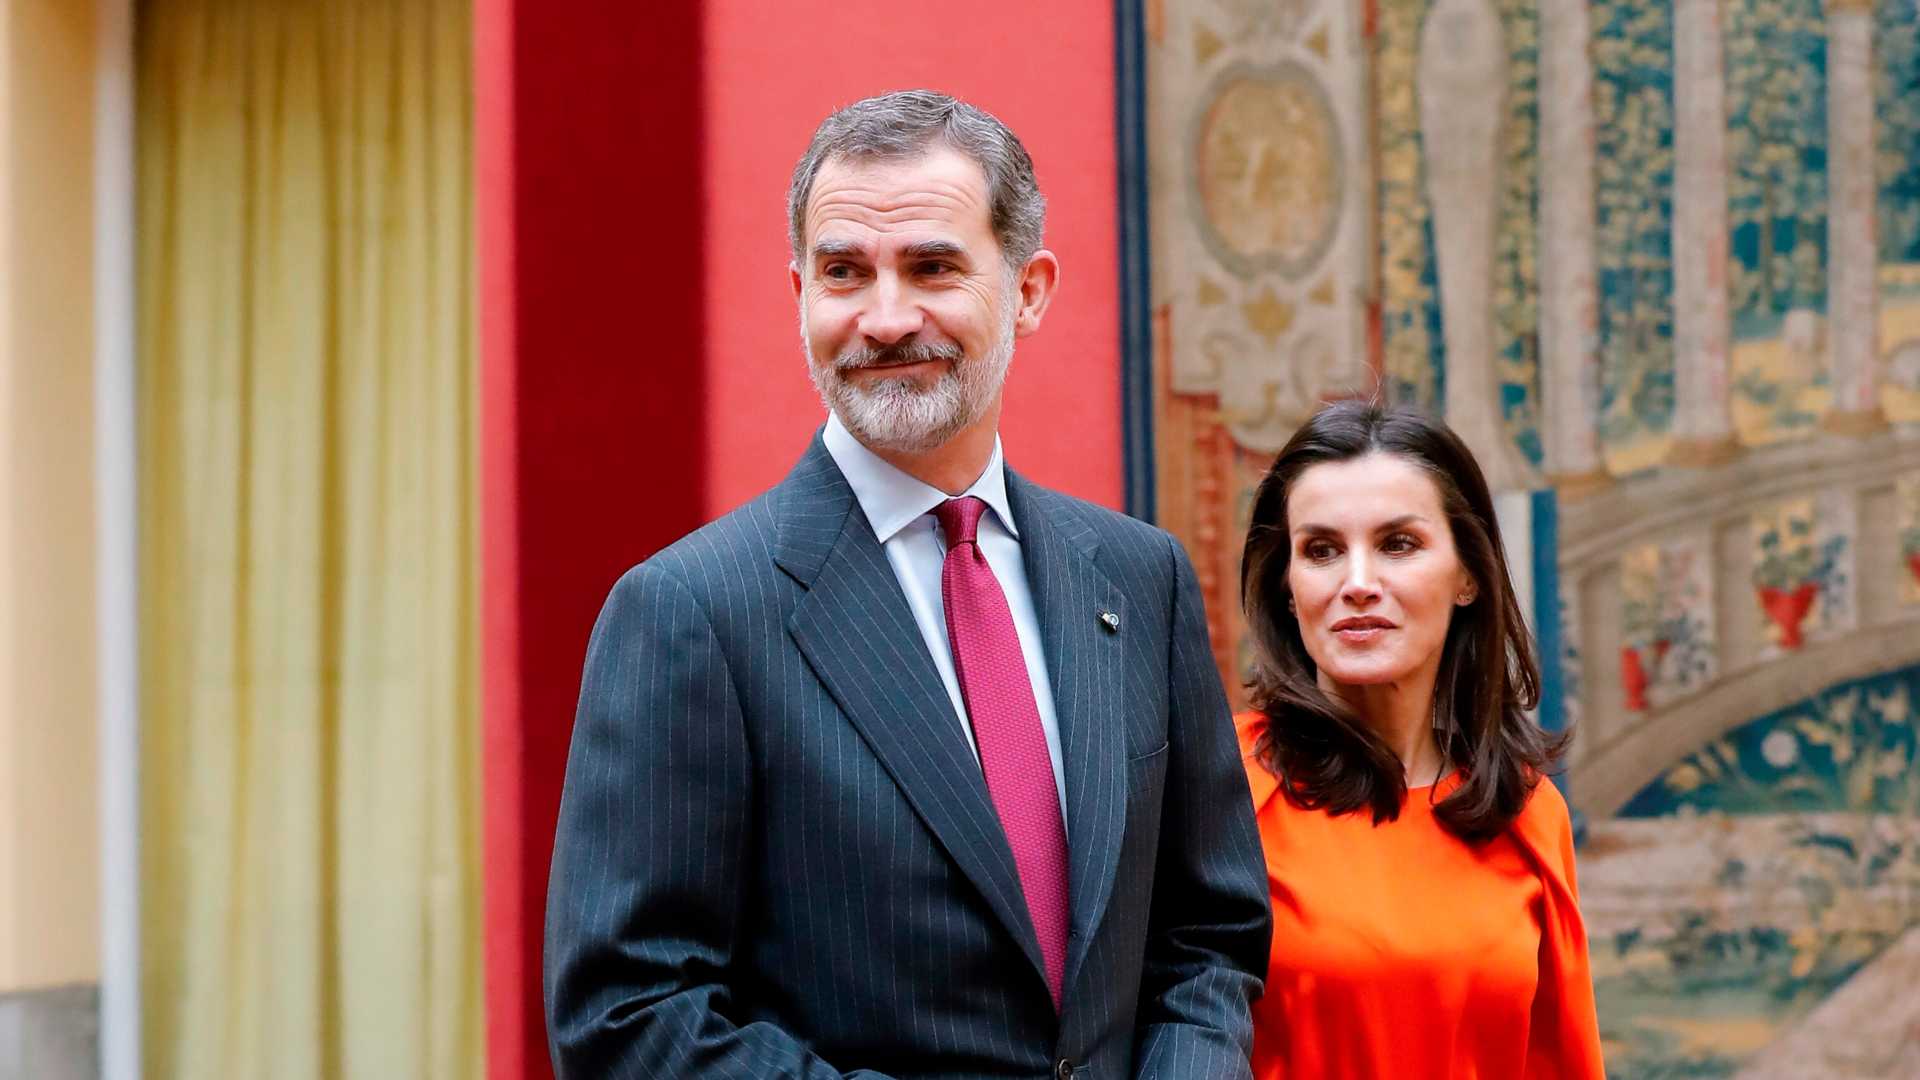 Directo | La Bolsa española abre con un 6,4% de subida tras el desplome histórico del jueves 1